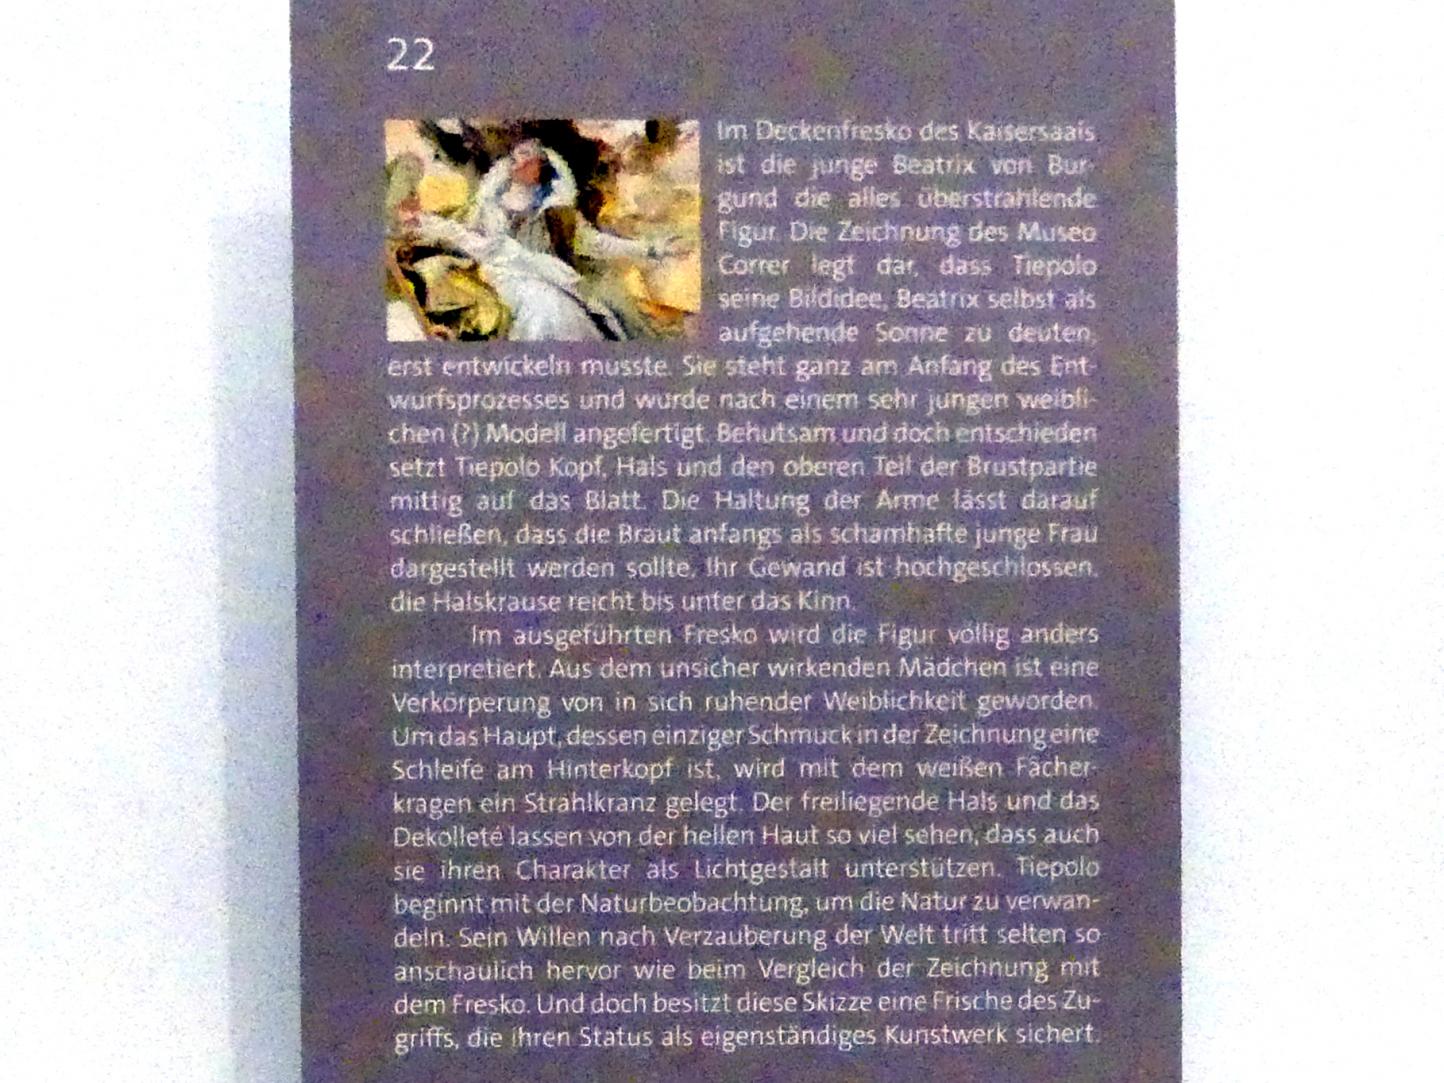 Giovanni Battista Tiepolo (1715–1785), Kopf und Büste einer jungen Frau (Faksimile), Würzburg, Martin von Wagner Museum, Ausstellung "Tiepolo und seine Zeit in Würzburg" vom 31.10.2020-15.07.2021, Saal 2, 1751–1752, Bild 4/4